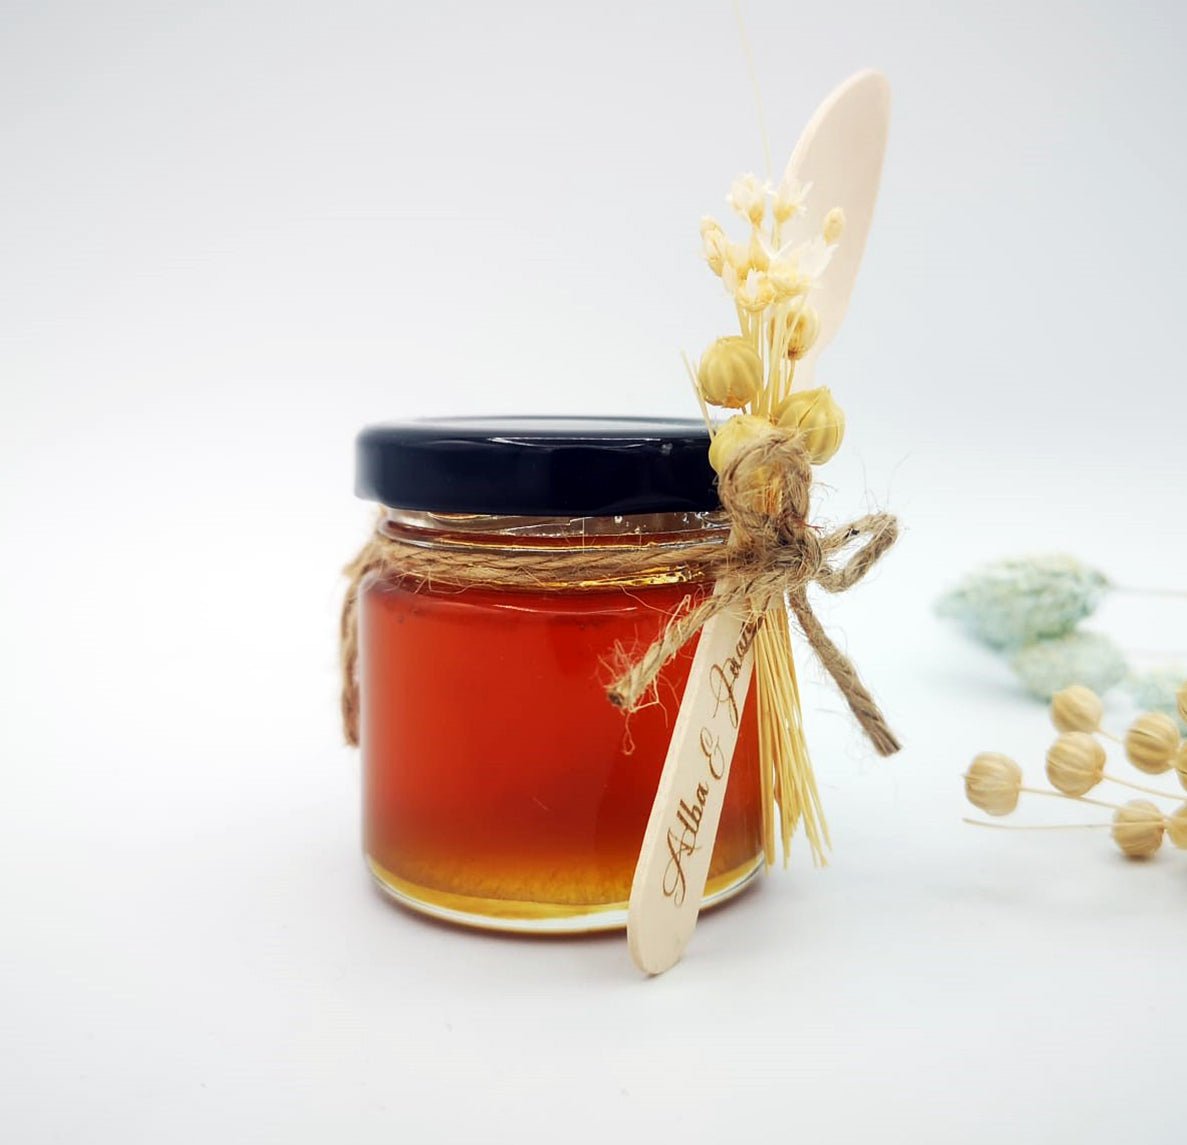 Tarro de miel con cuchara - Andrea House - cristal y madera - desayuno